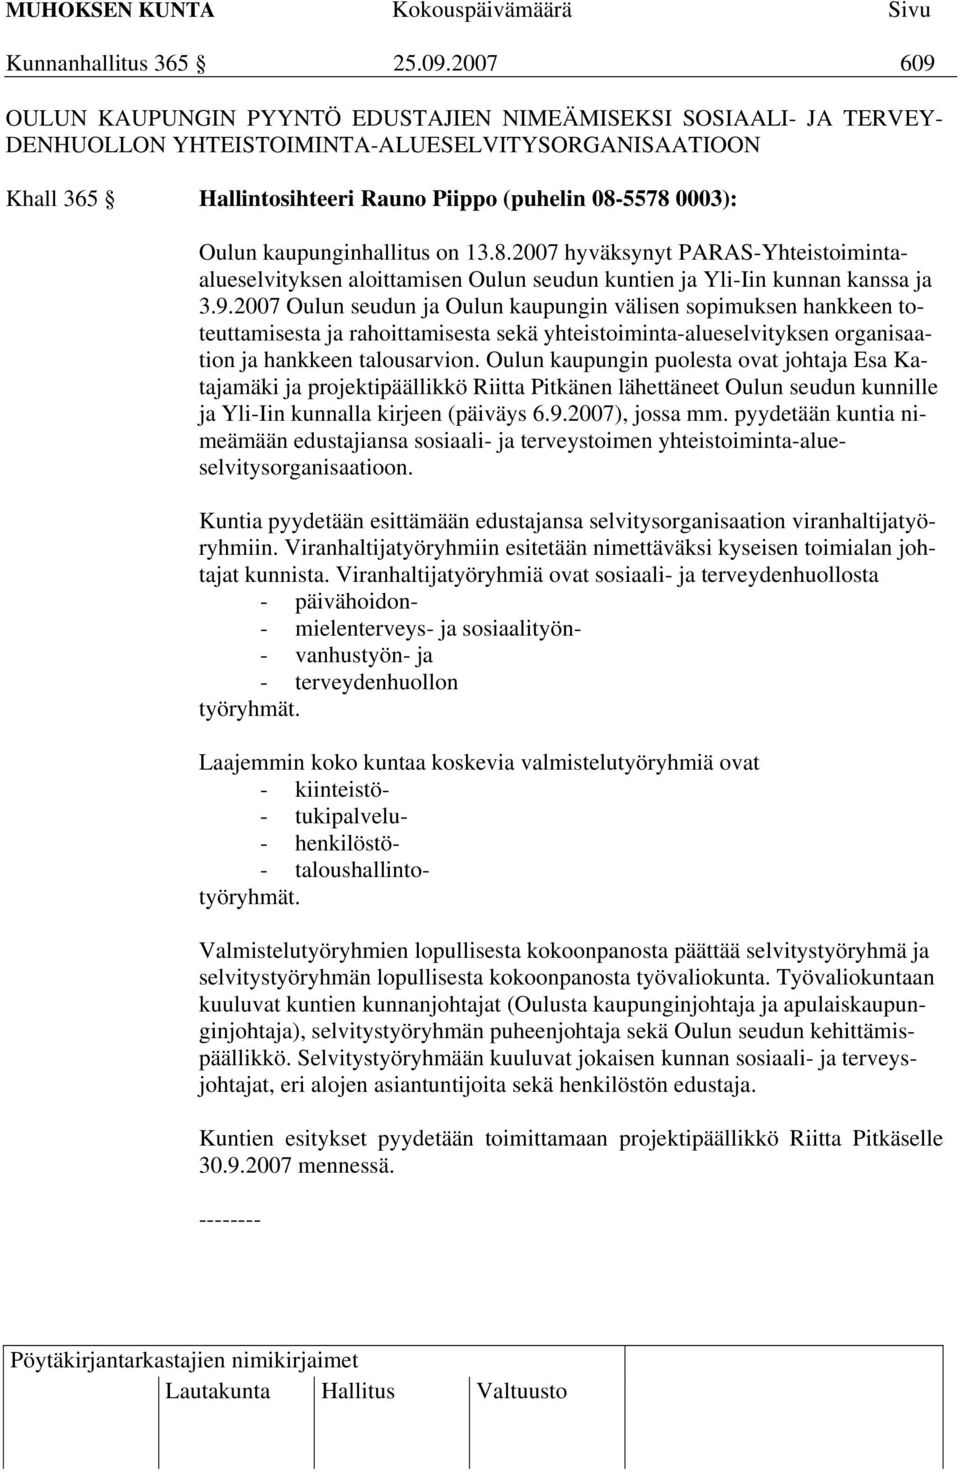 kaupunginhallitus on 13.8.2007 hyväksynyt PARAS-Yhteistoimintaalueselvityksen aloittamisen Oulun seudun kuntien ja Yli-Iin kunnan kanssa ja 3.9.